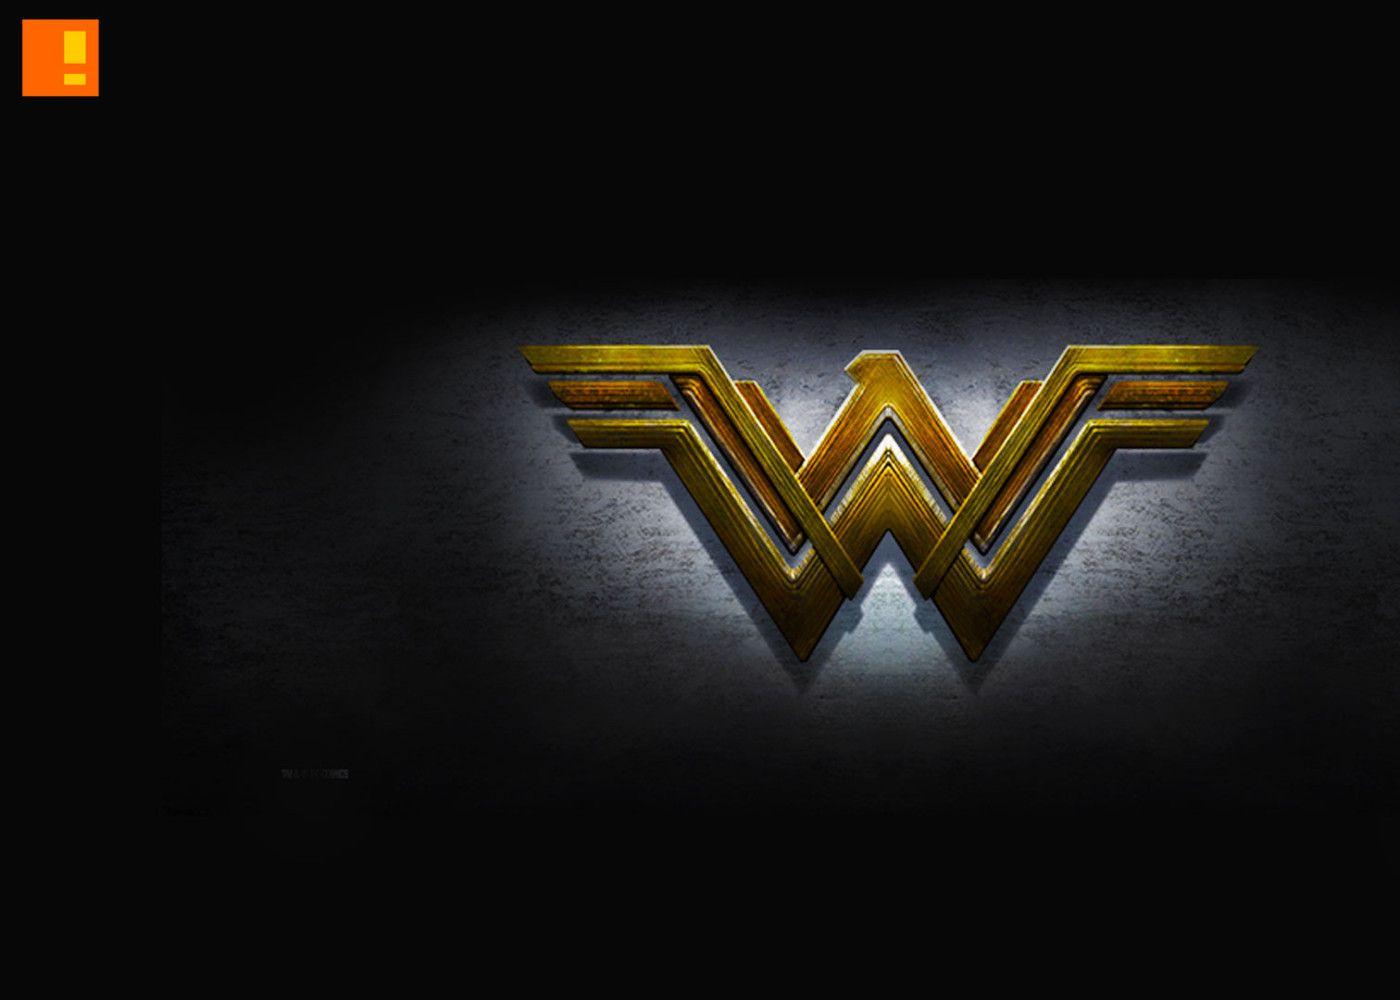 Wonder Woman Emblem Logo Acrylic Executive Display Piece Desk Top Paperweight 